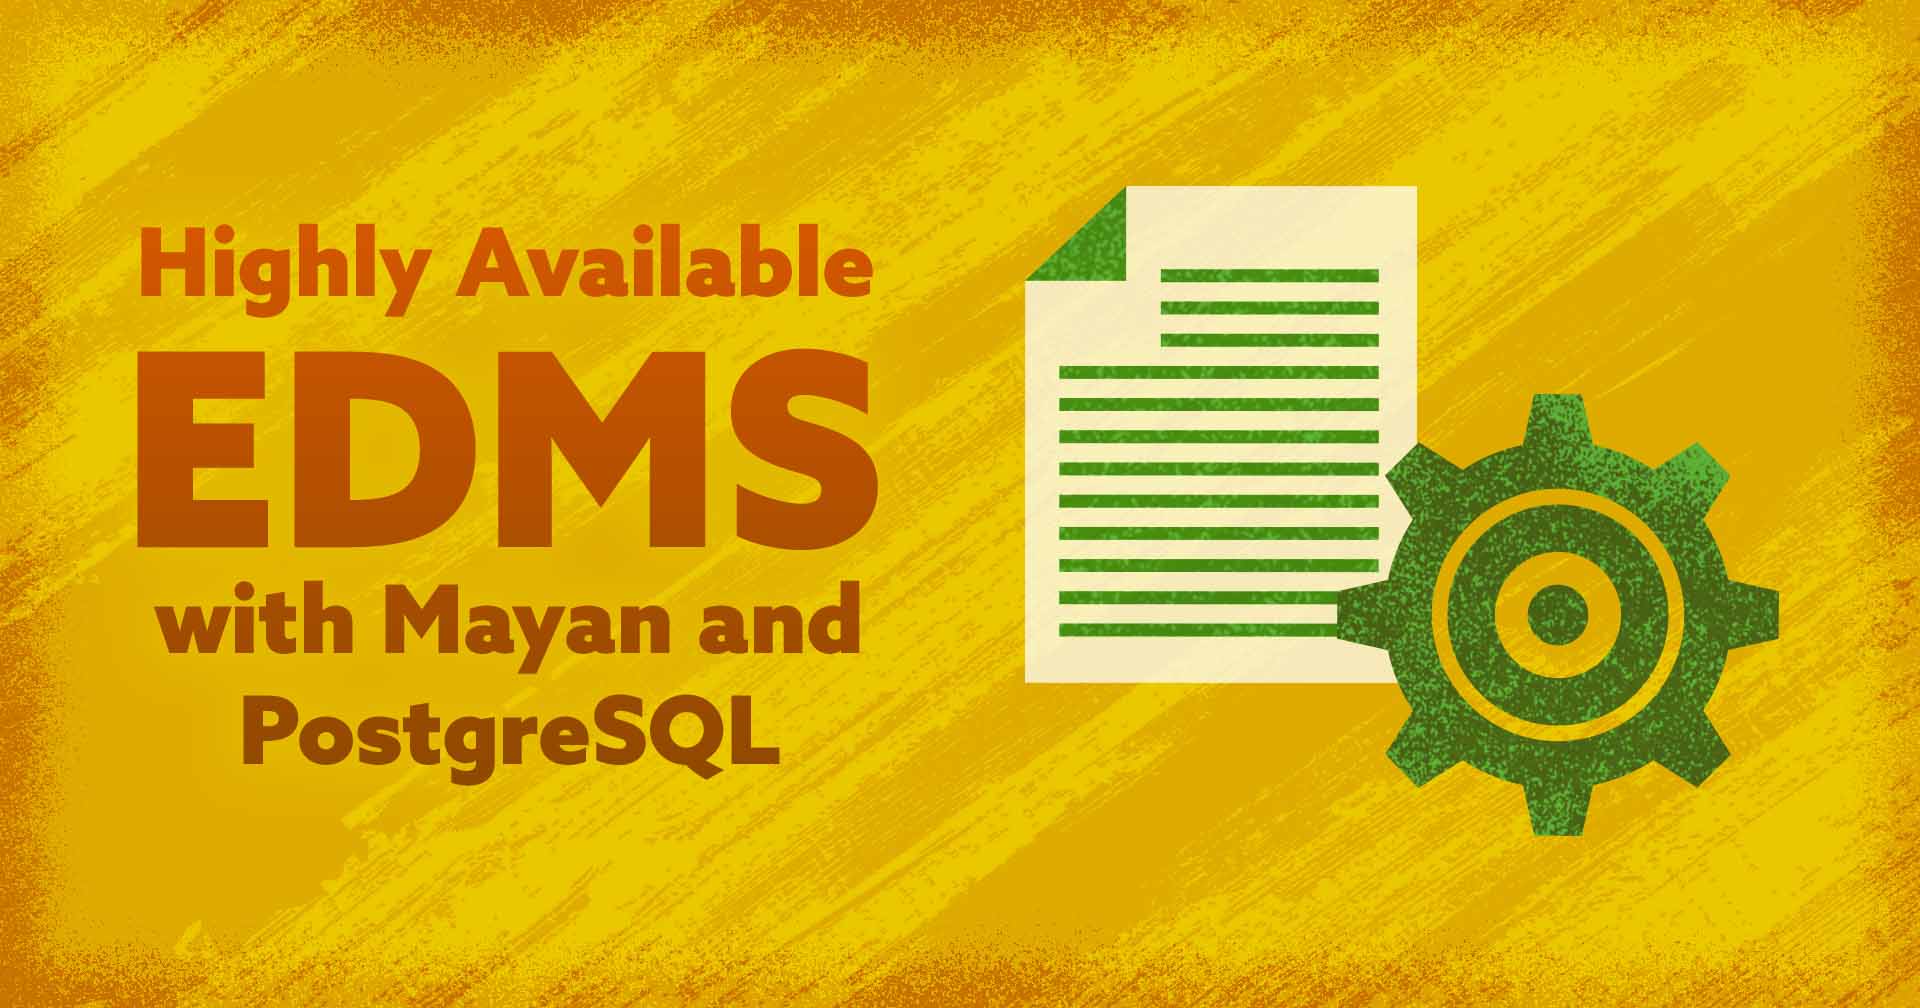 EDMS-altamente-disponible-con-Mayan-y-PostgreSQL